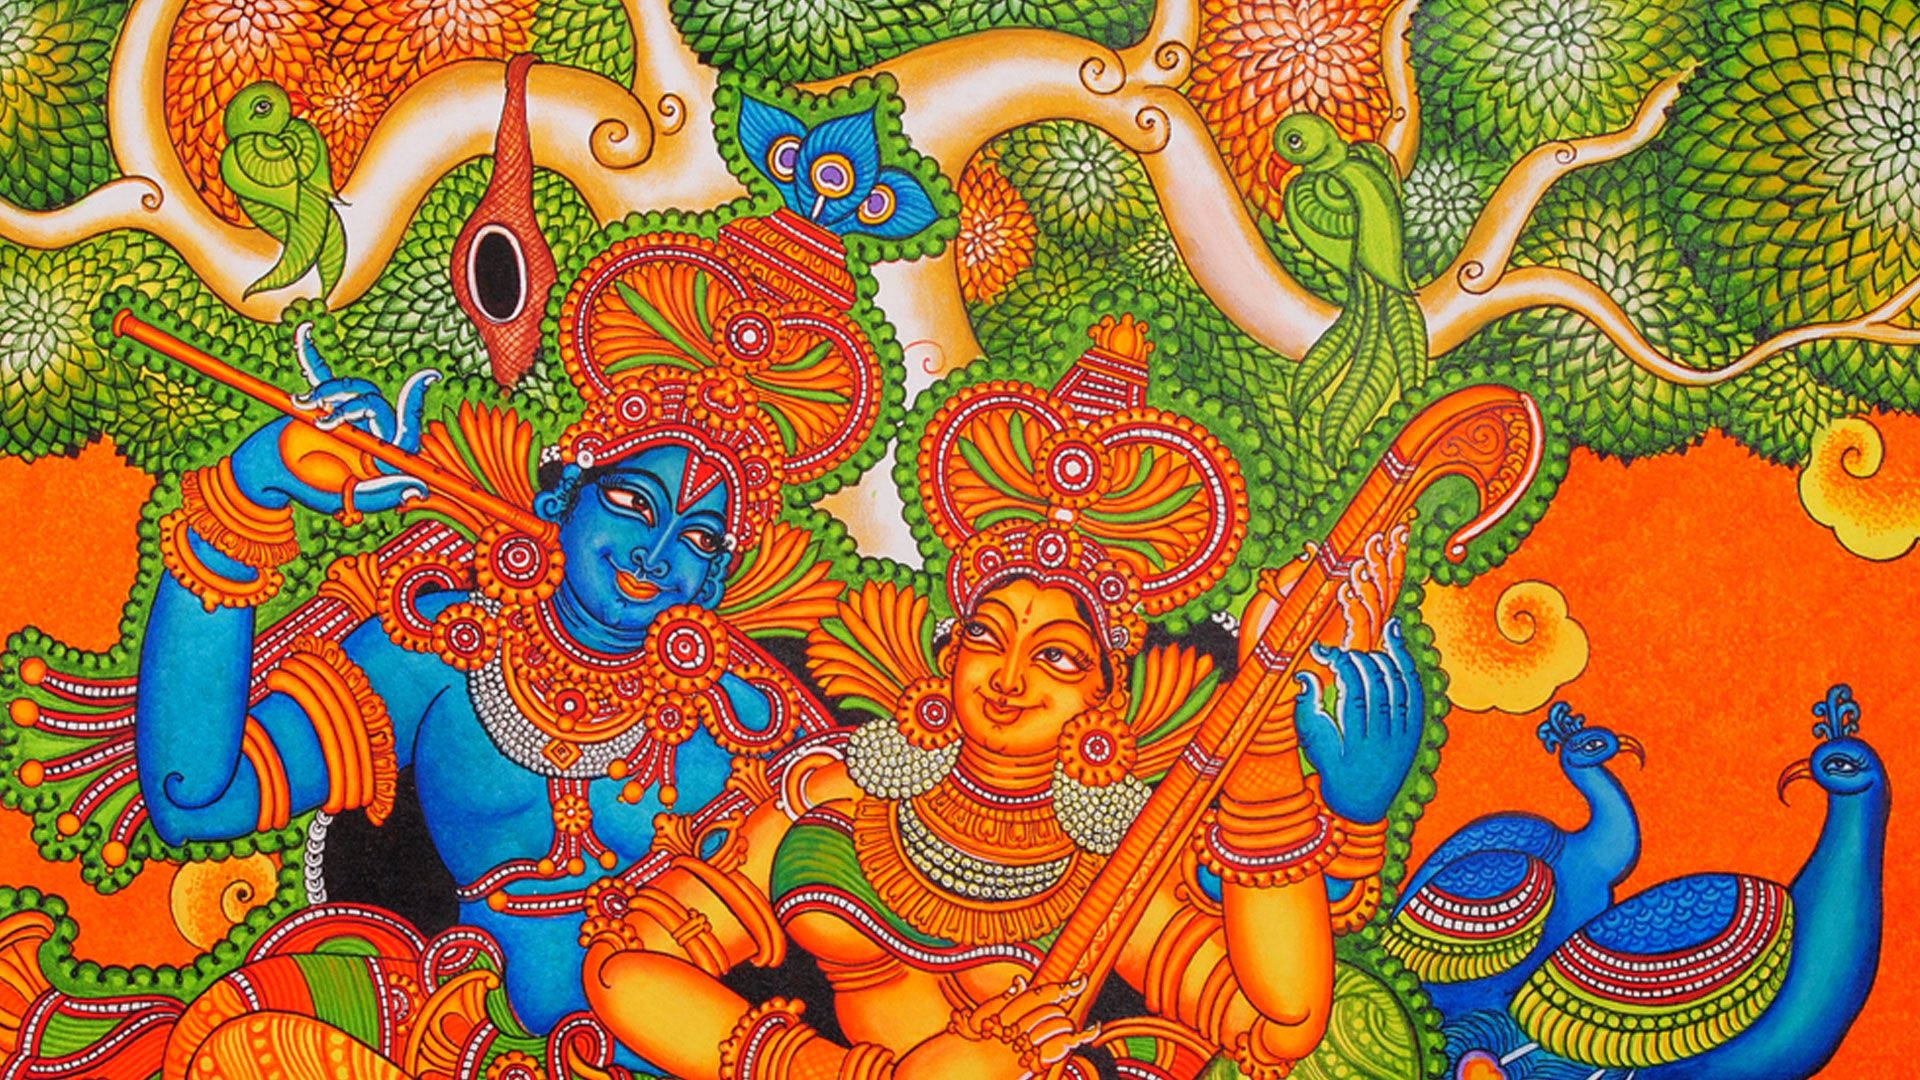 Kerala Mural Folk Art Painting